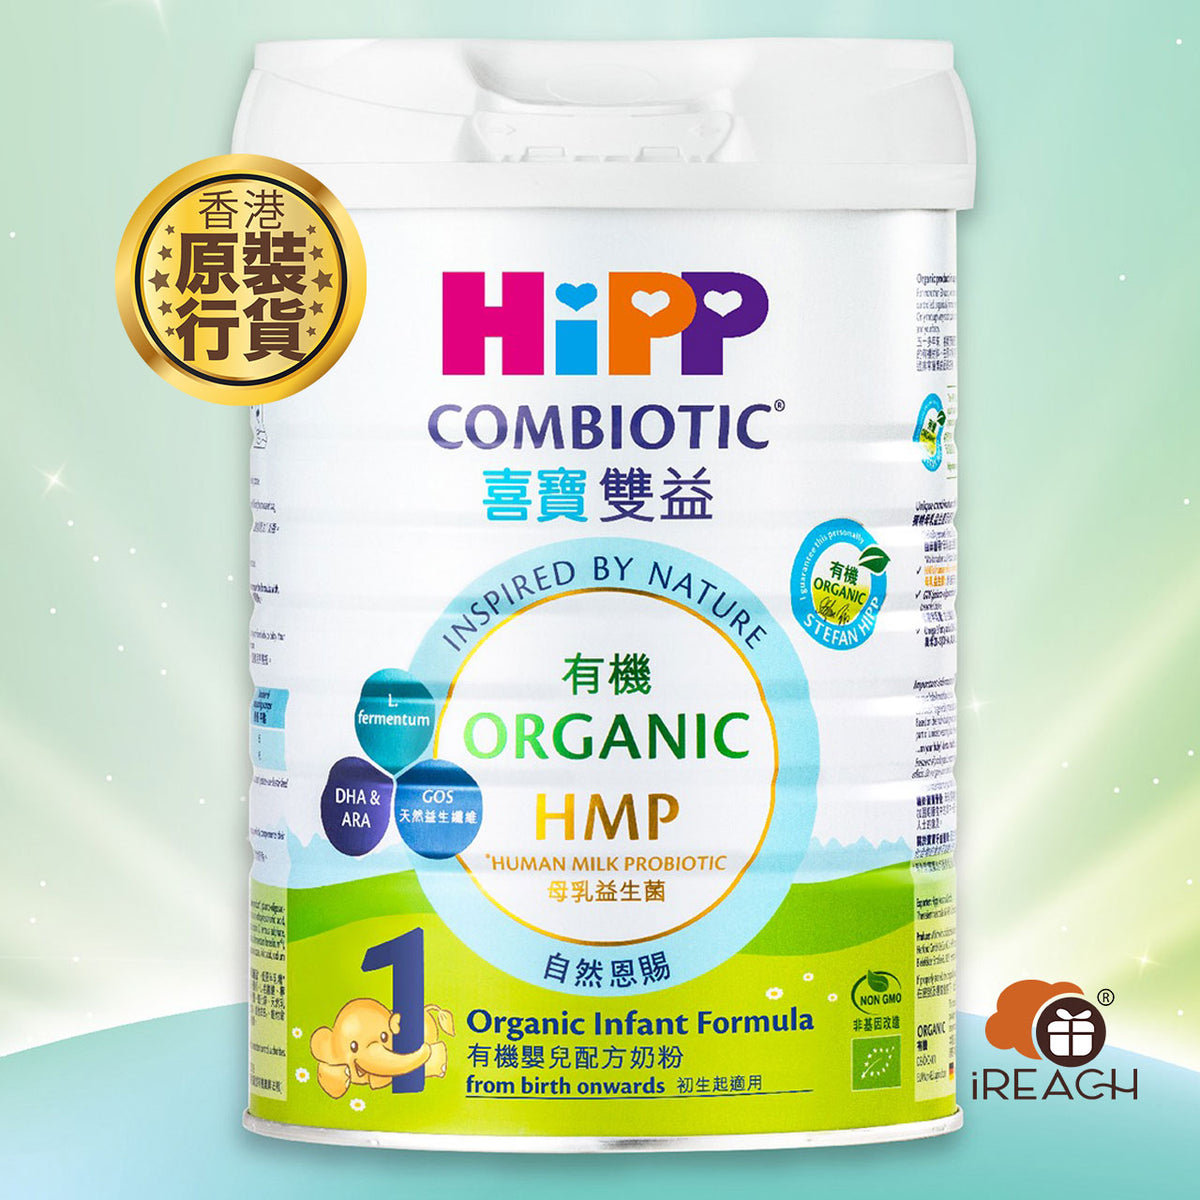 HiPP喜寶有機雙益HMP嬰兒奶粉1號 800克 香港行貨